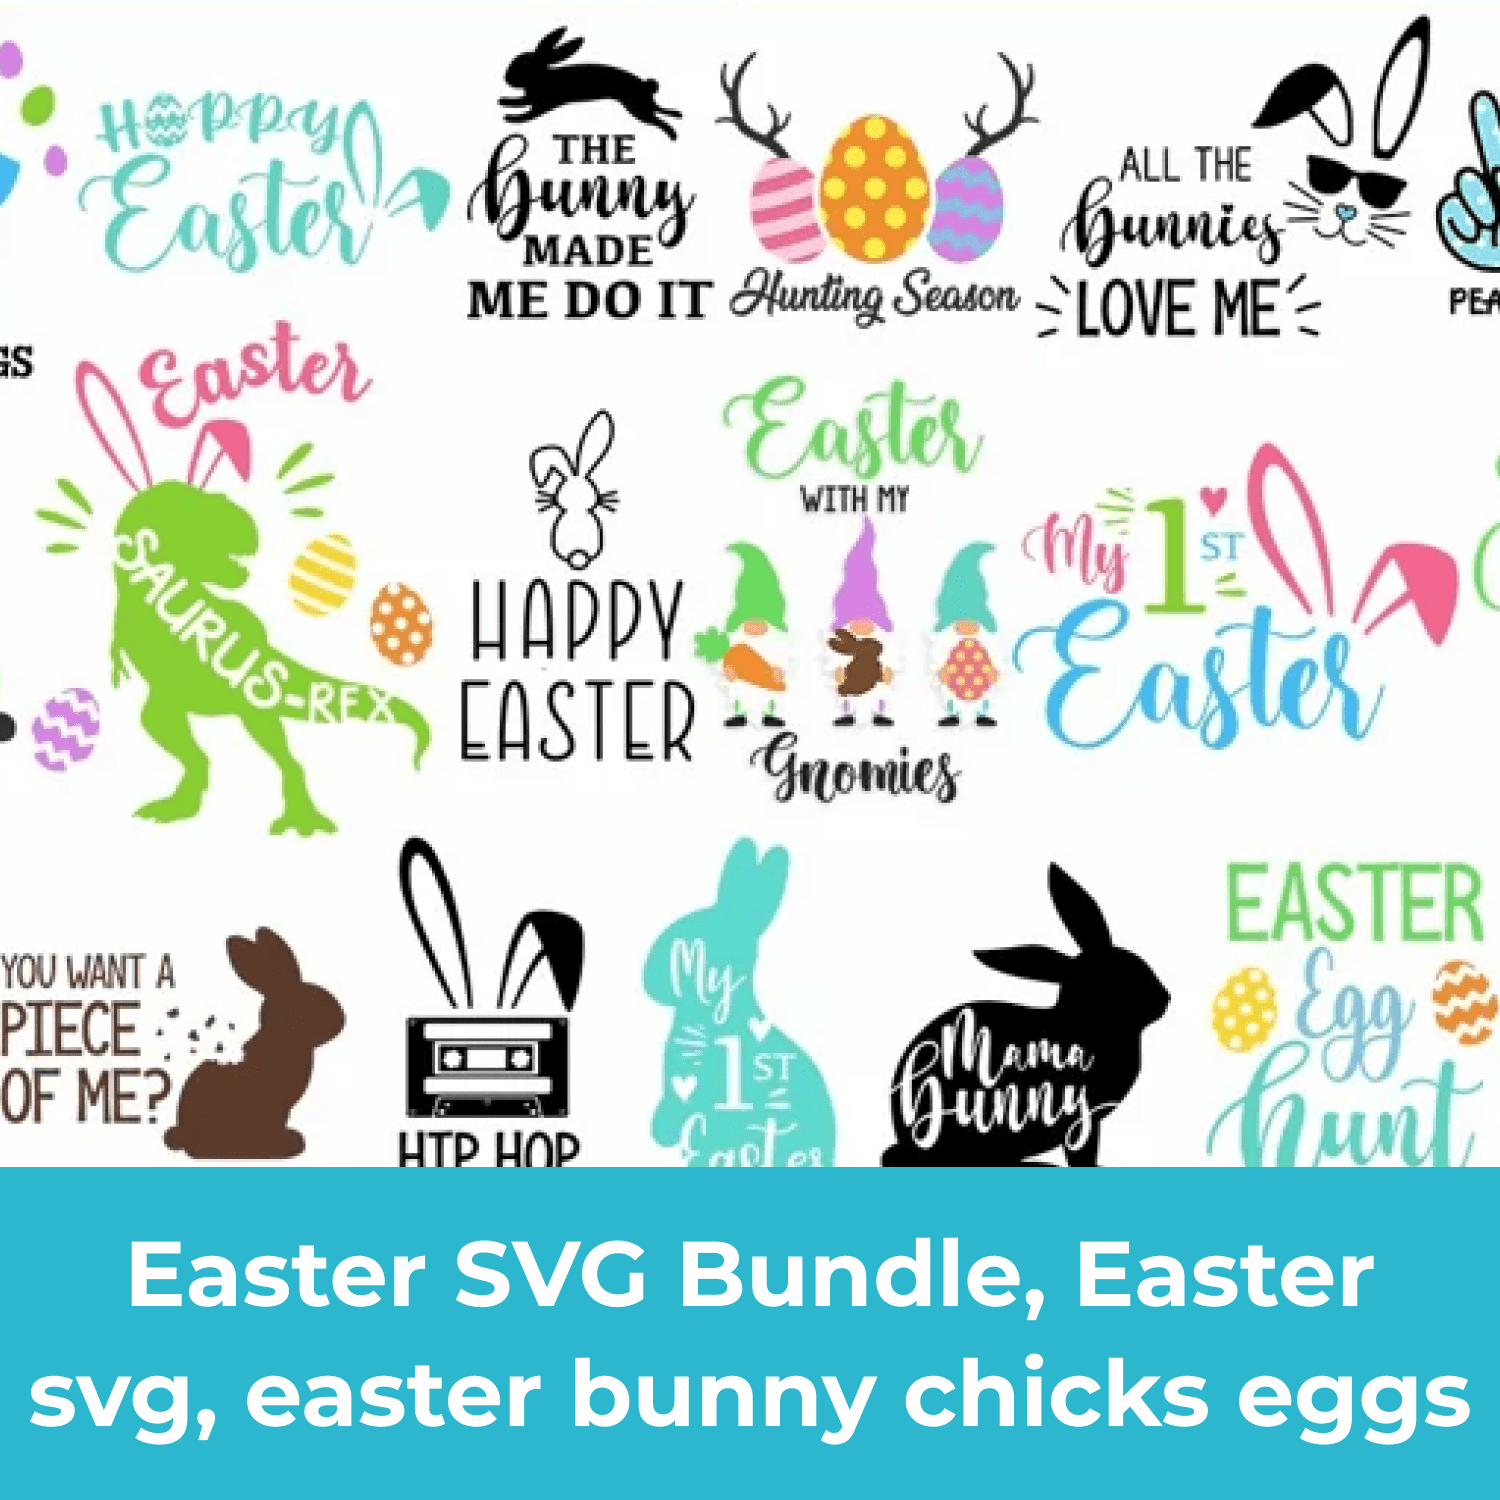 Easter SVG Bundle, Easter svg, easter bunny chicks eggs cover.